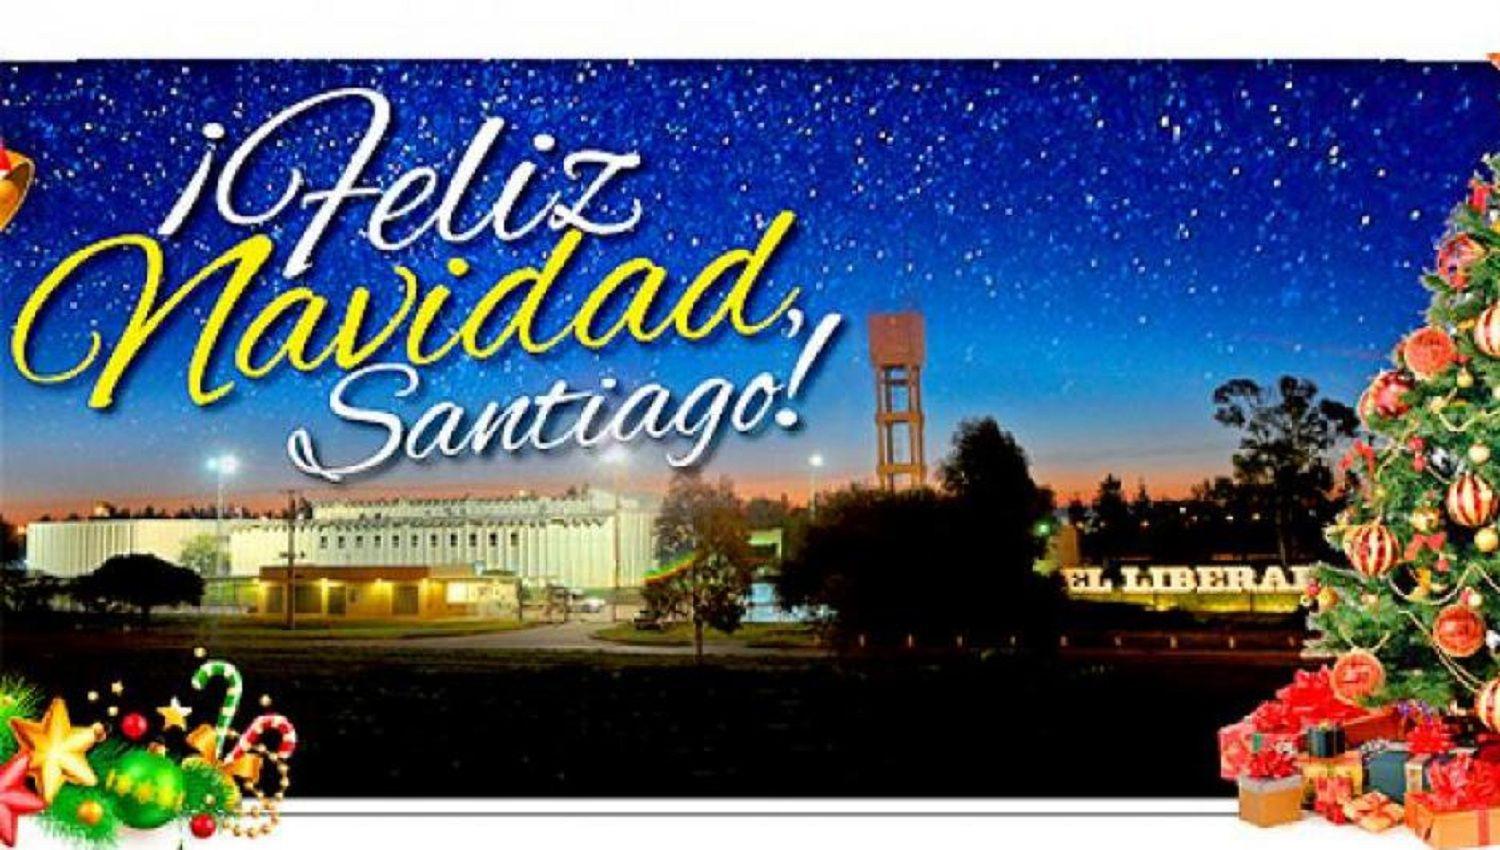 VIDEO  Una muy Feliz Navidad Santiago del Estero es el mayor deseo de EL LIBERAL